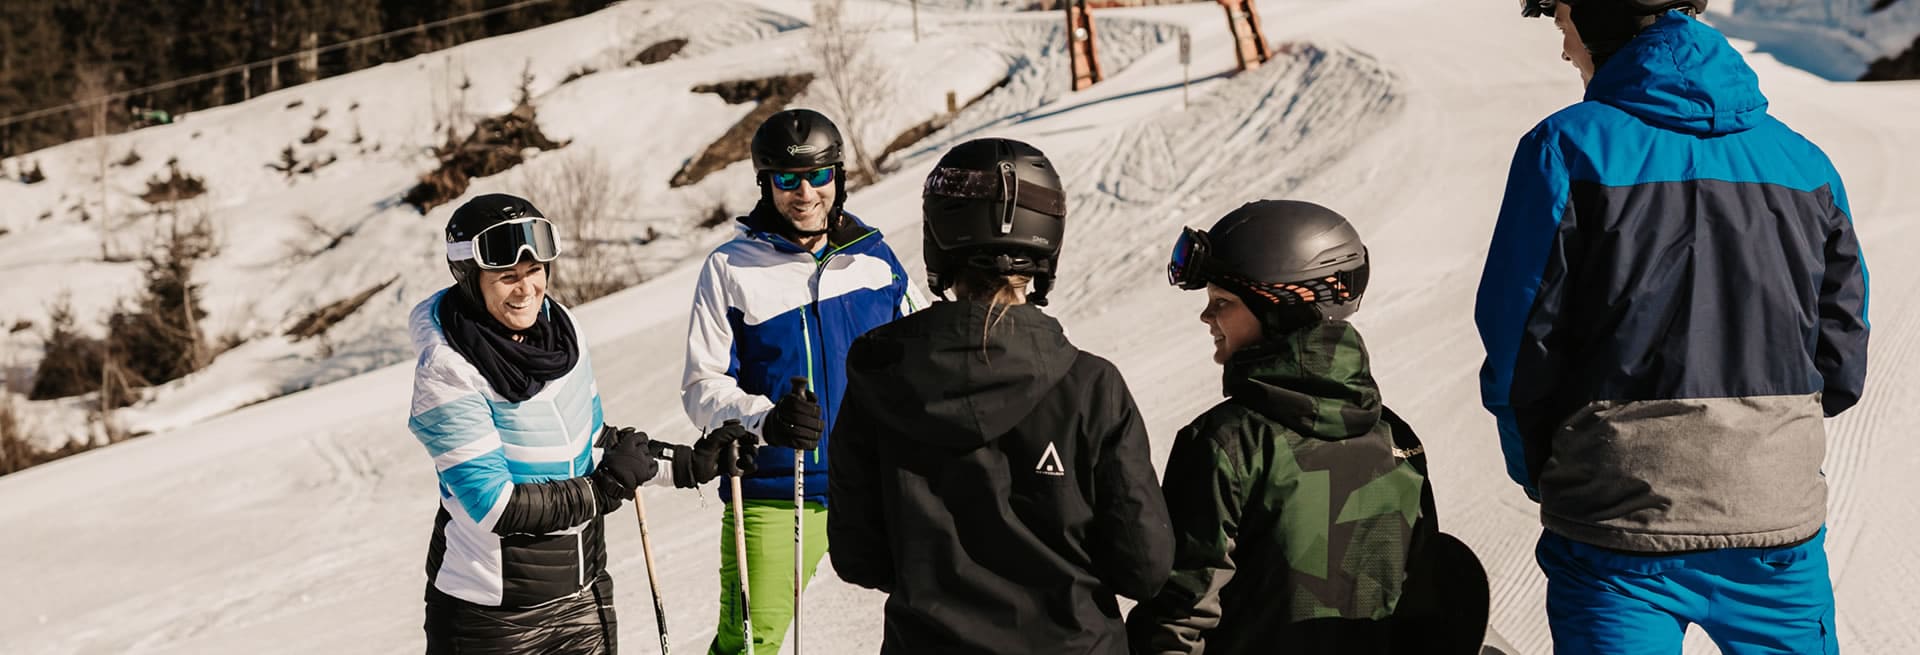  Ski vacation with children in Ski amadé, Austria, Salzburger Land